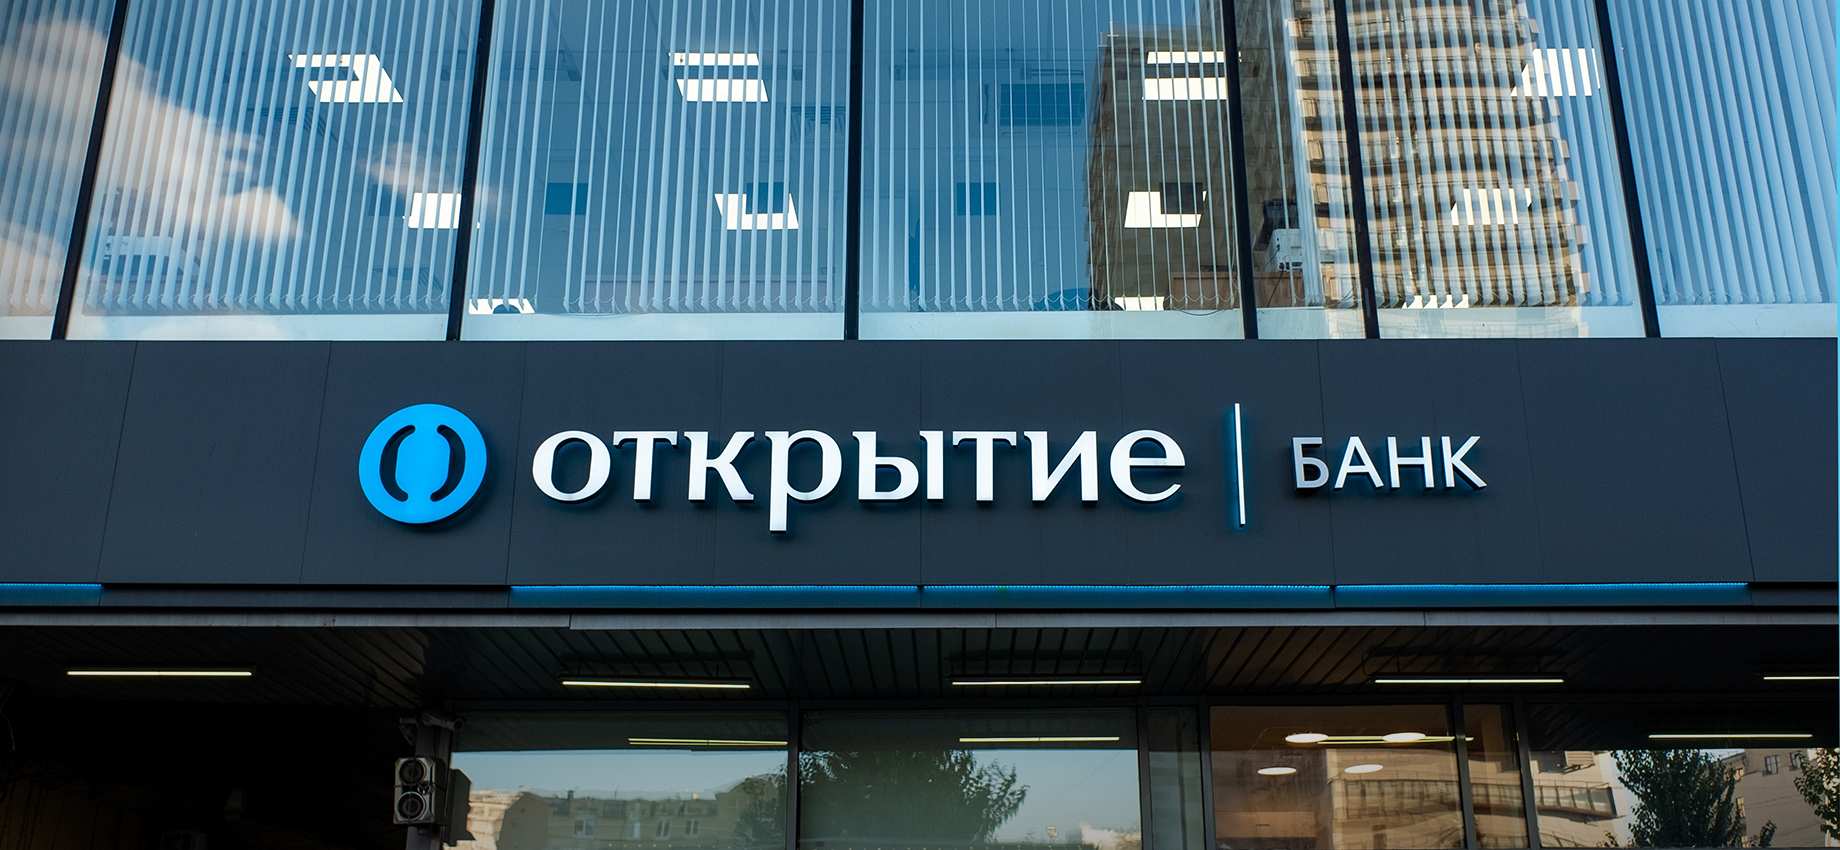 Банк «Открытие» и сеть гостиниц: что купили и продали российские компании за два месяца